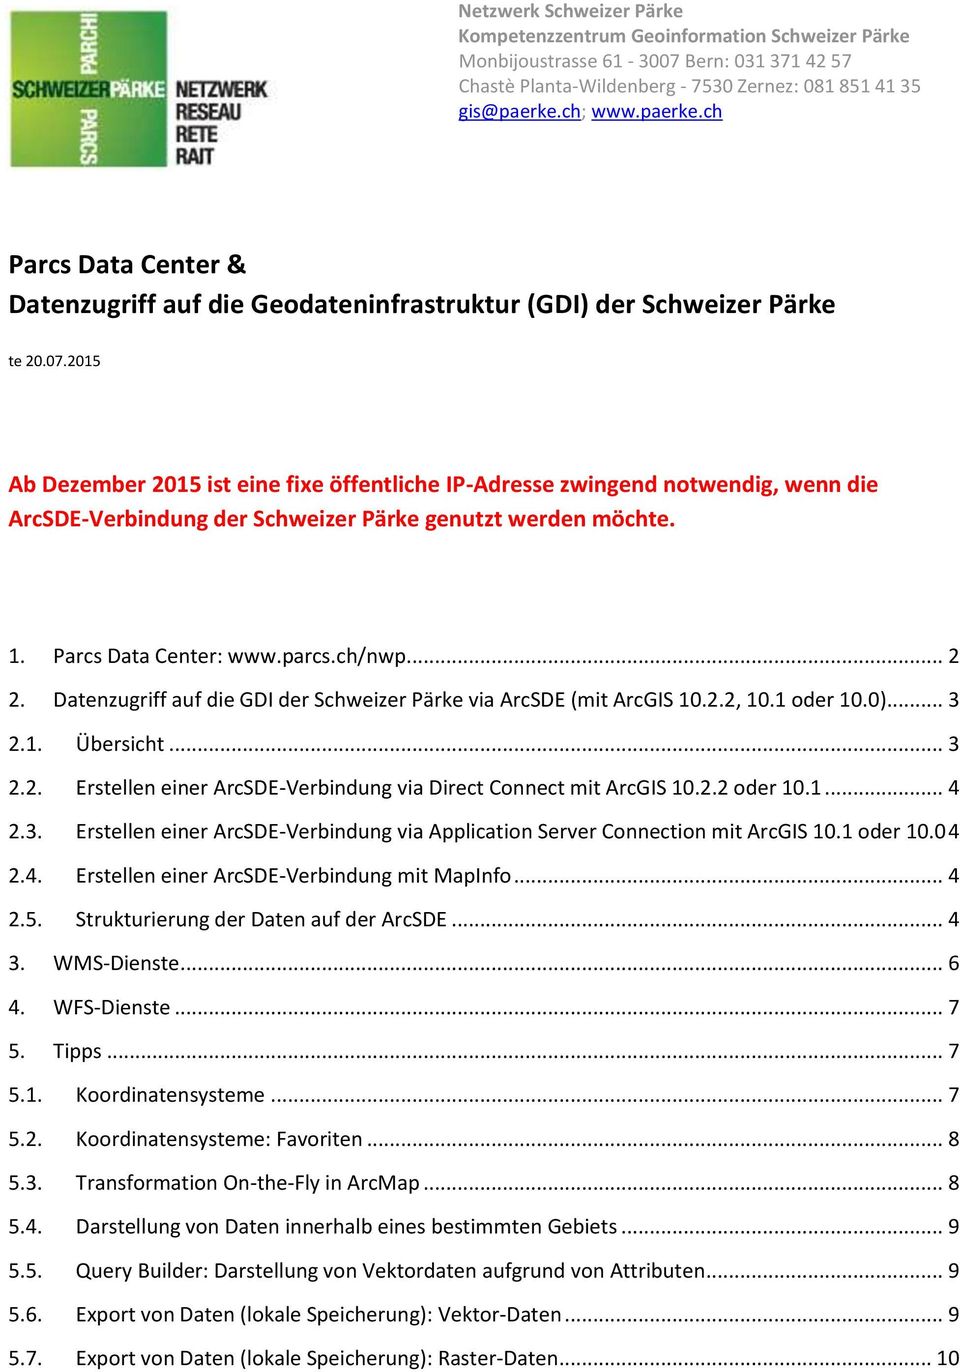 2015 Ab Dezember 2015 ist eine fixe öffentliche IP-Adresse zwingend notwendig, wenn die ArcSDE-Verbindung der Schweizer Pärke genutzt werden möchte. 1. Parcs Data Center: www.parcs.ch/nwp... 2 2.